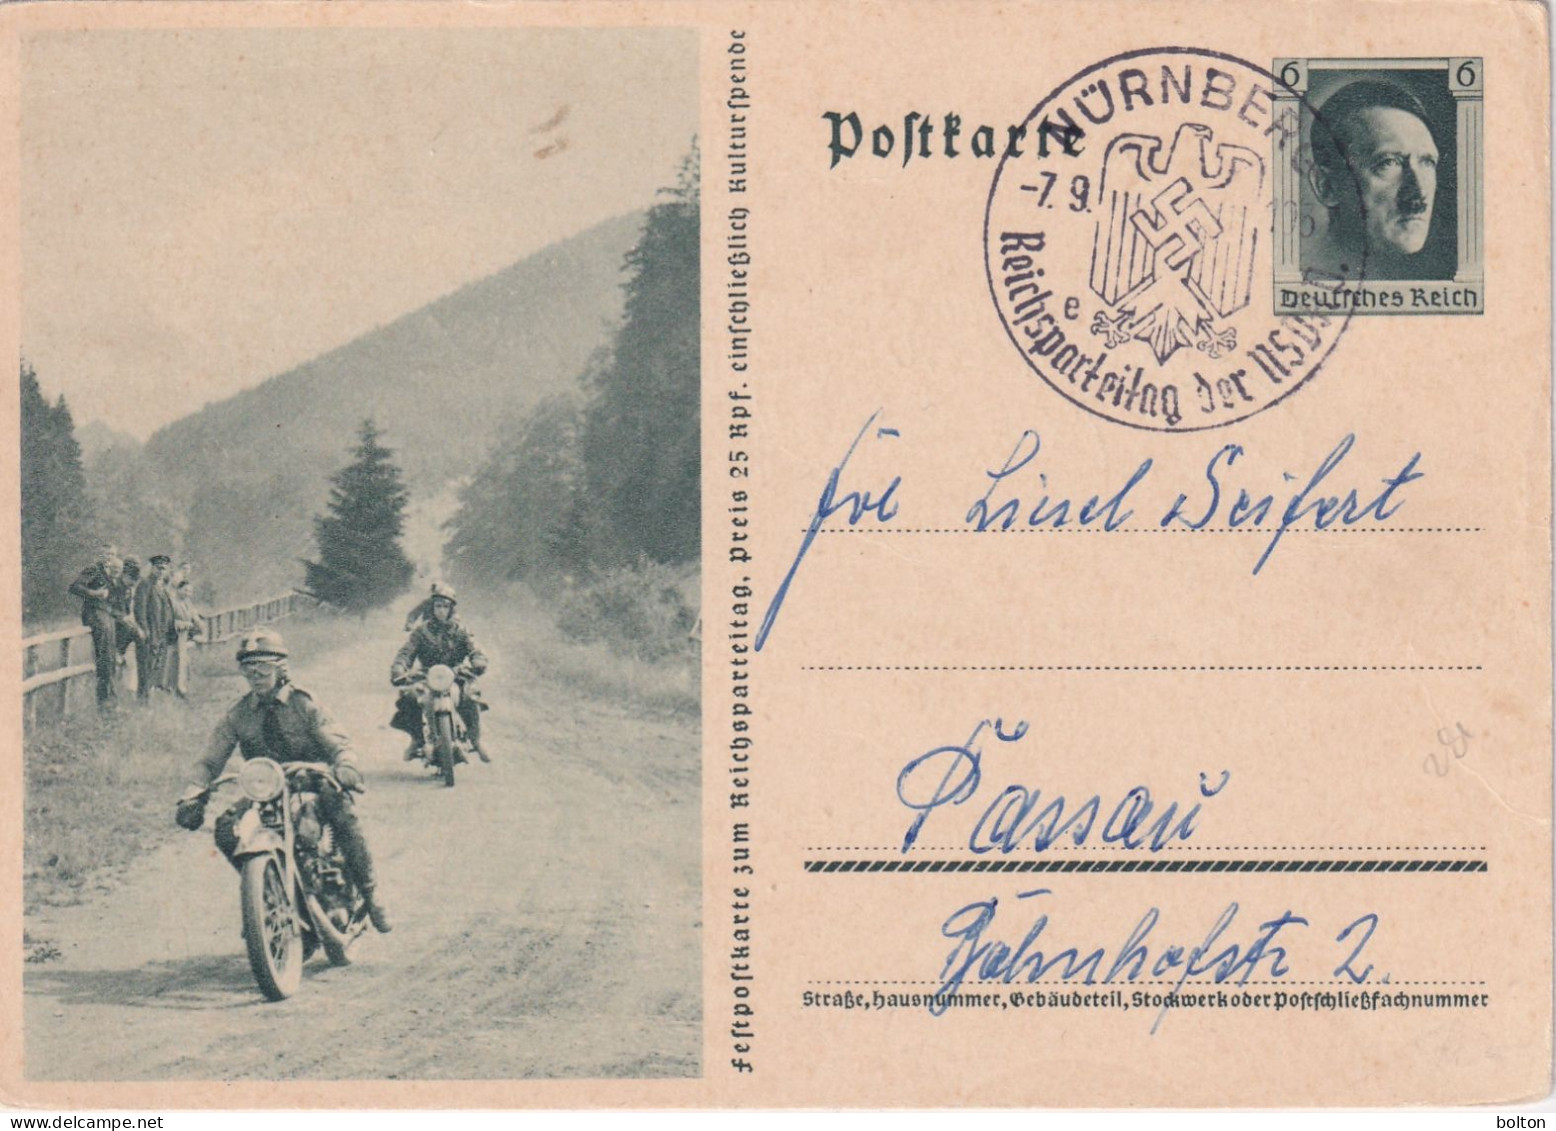 1930  Germania INTERO POSTALE  FIGURATO CORSA MMOTOCICLISTICA - Motorräder